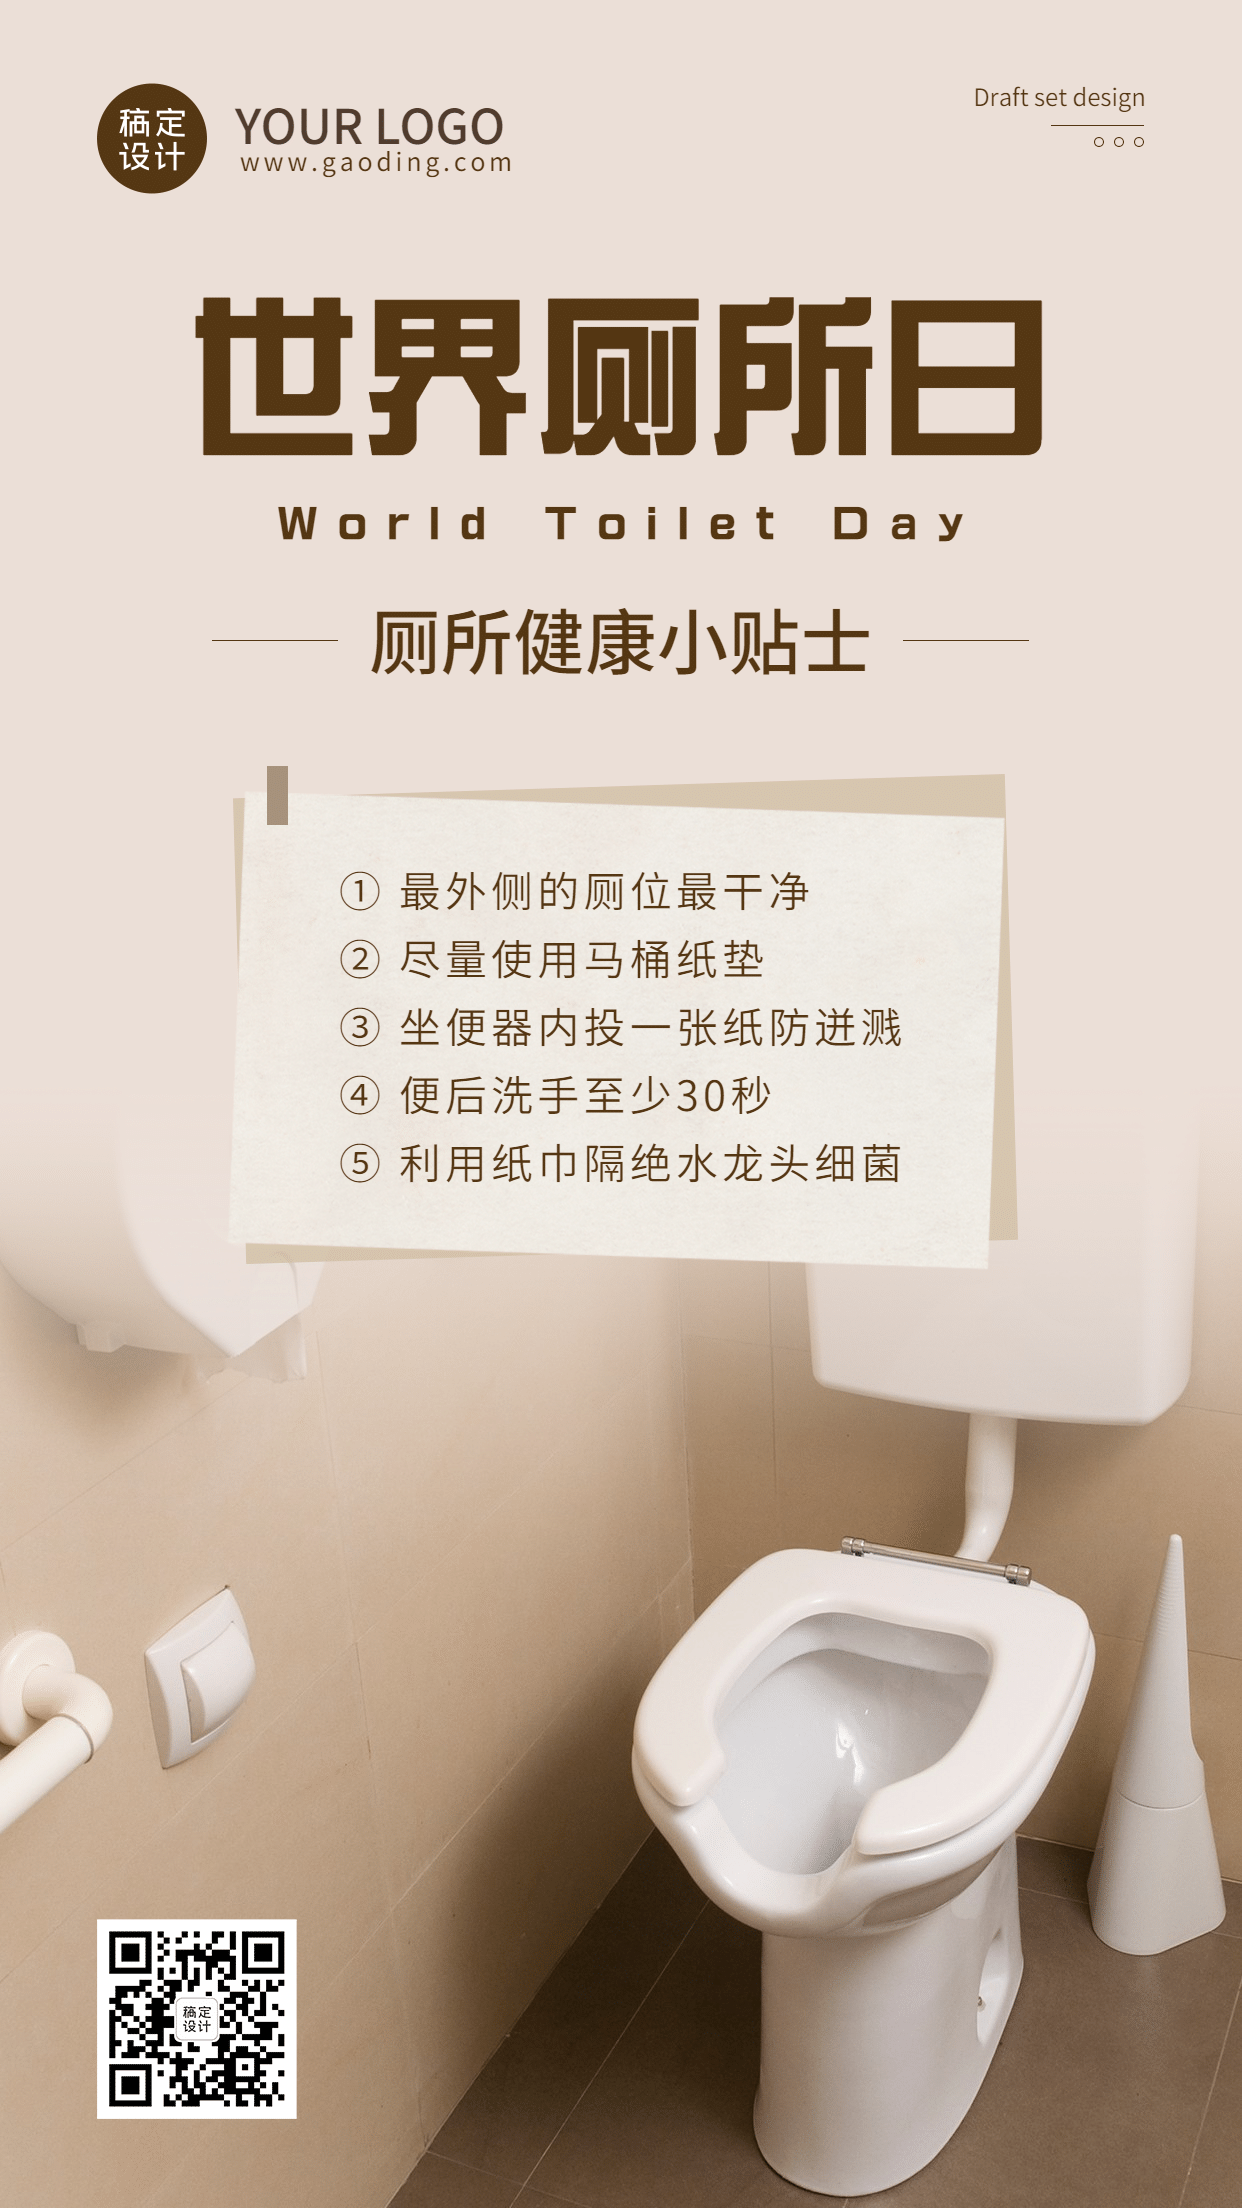 世界厕所日文明如厕公共卫知识科普实景生手机海报预览效果